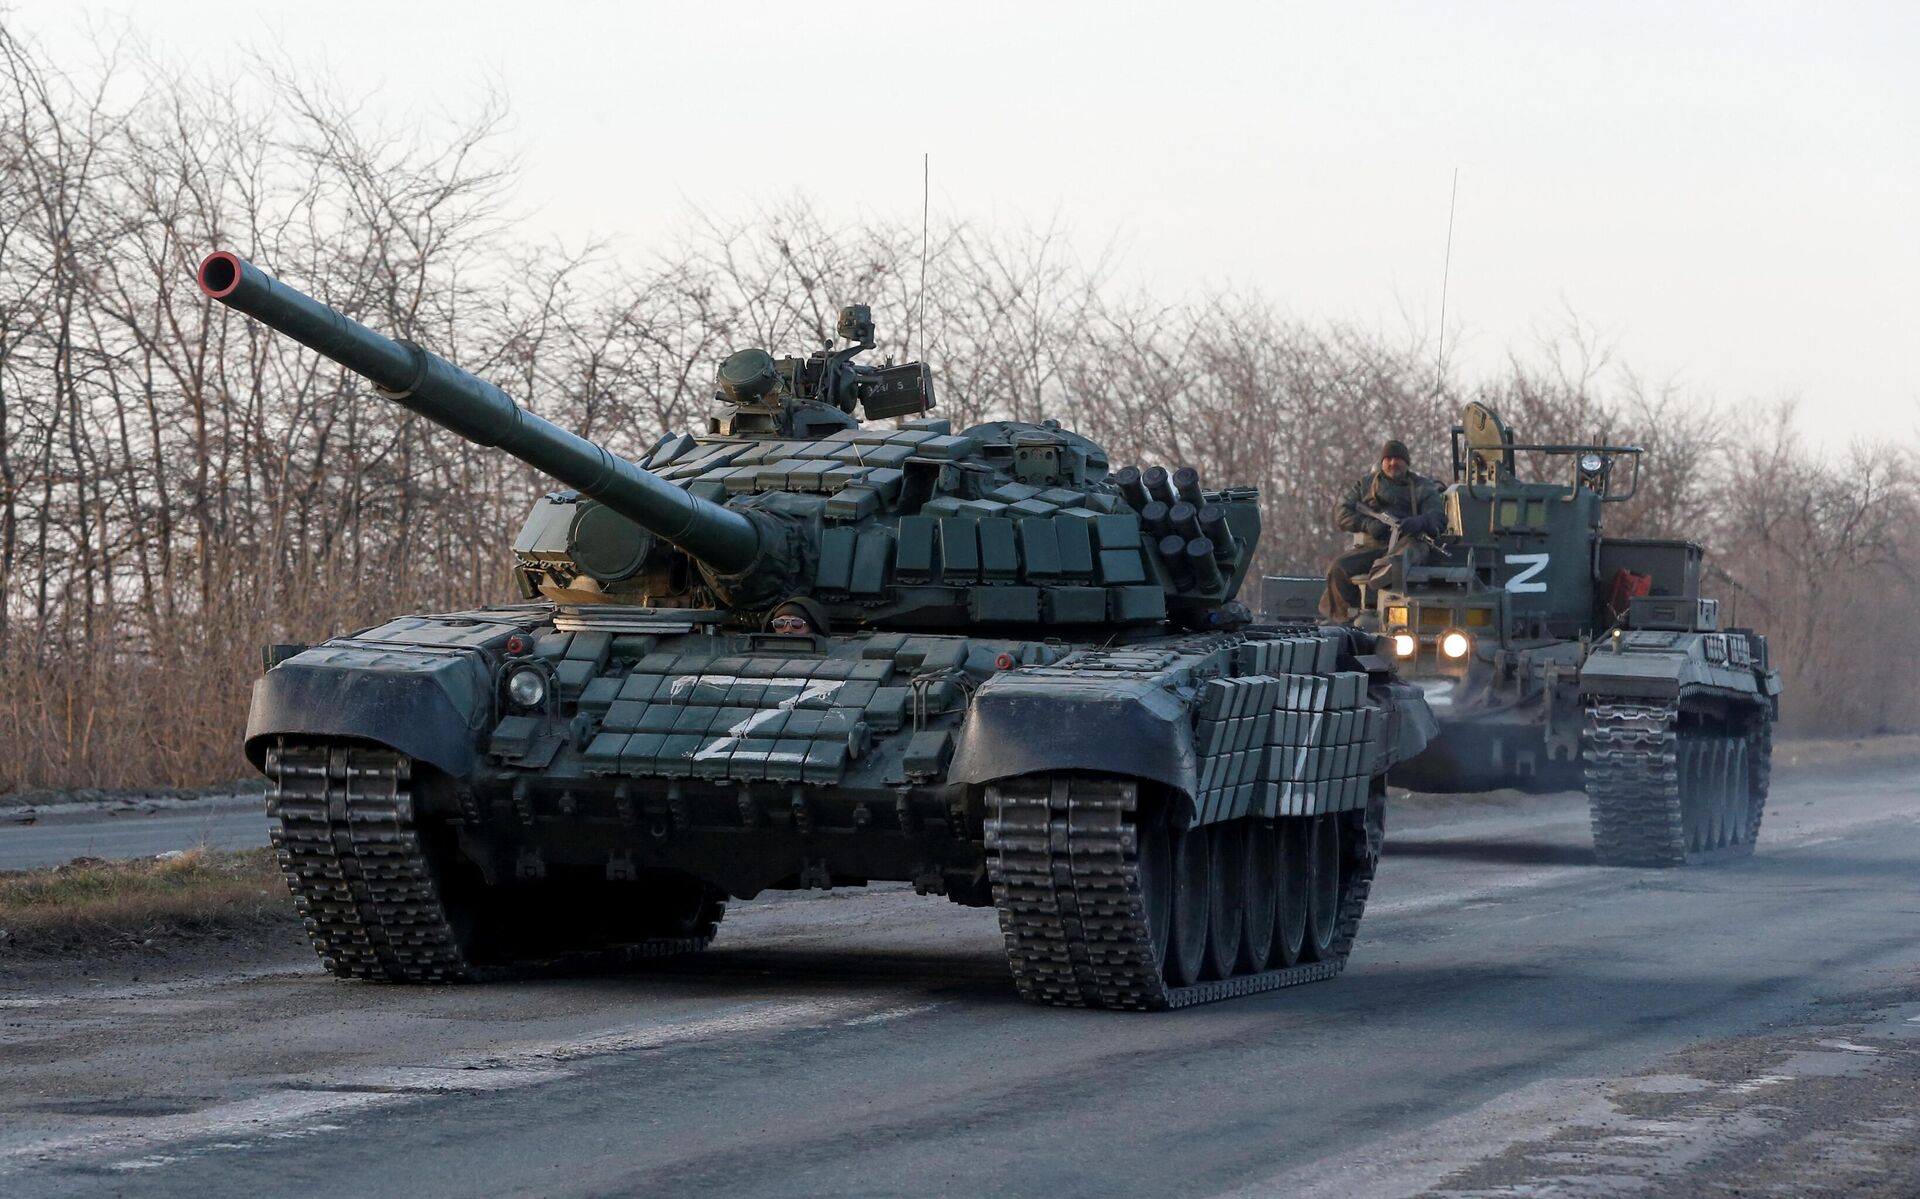 Membros do serviço de tropas pró-Rússia são vistos no topo de veículos blindados durante o conflito Ucrânia-Rússia em uma estrada que leva à cidade de Mariupol, Ucrânia, 28 de março de 2022 - Sputnik Brasil, 1920, 06.04.2022